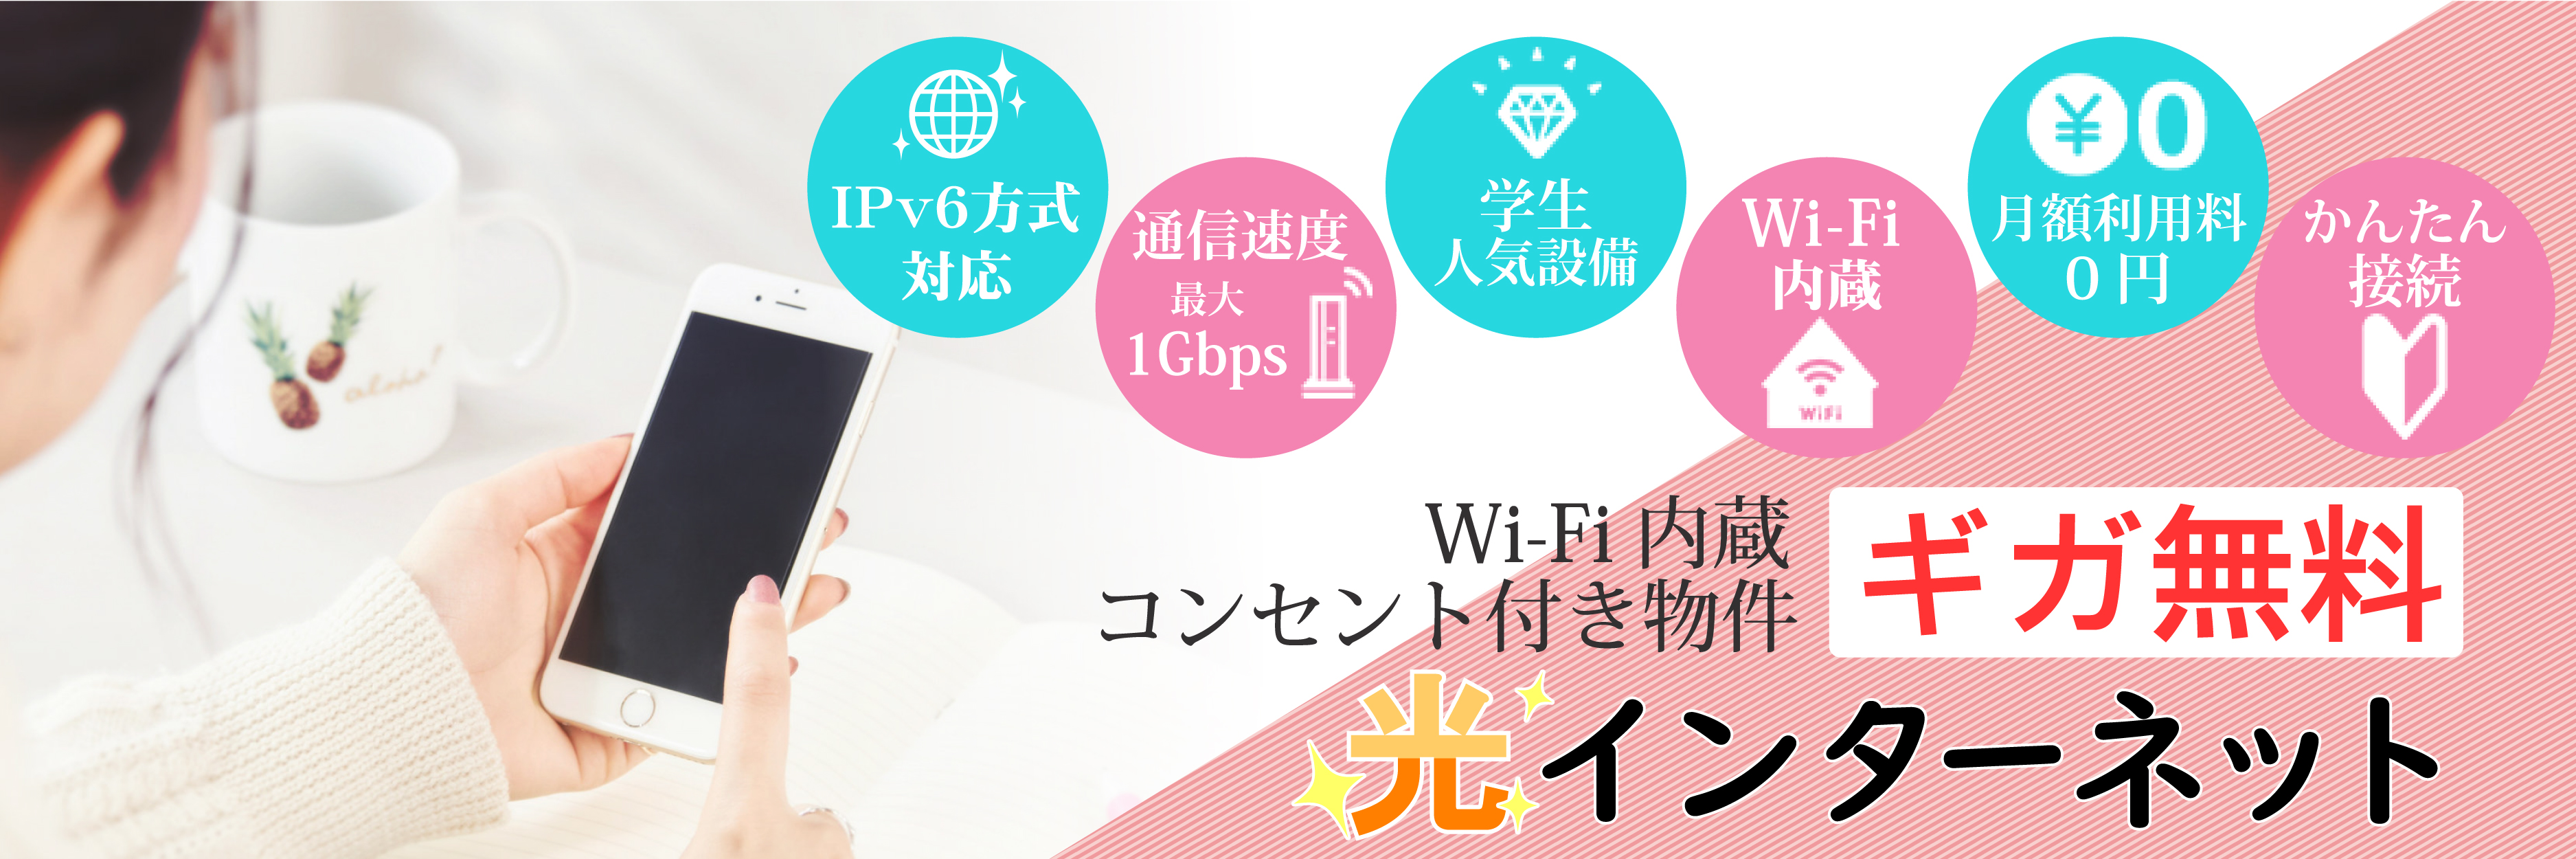 内蔵型Wi-Fiルーター付き・IPv6対応光インターネット無料！